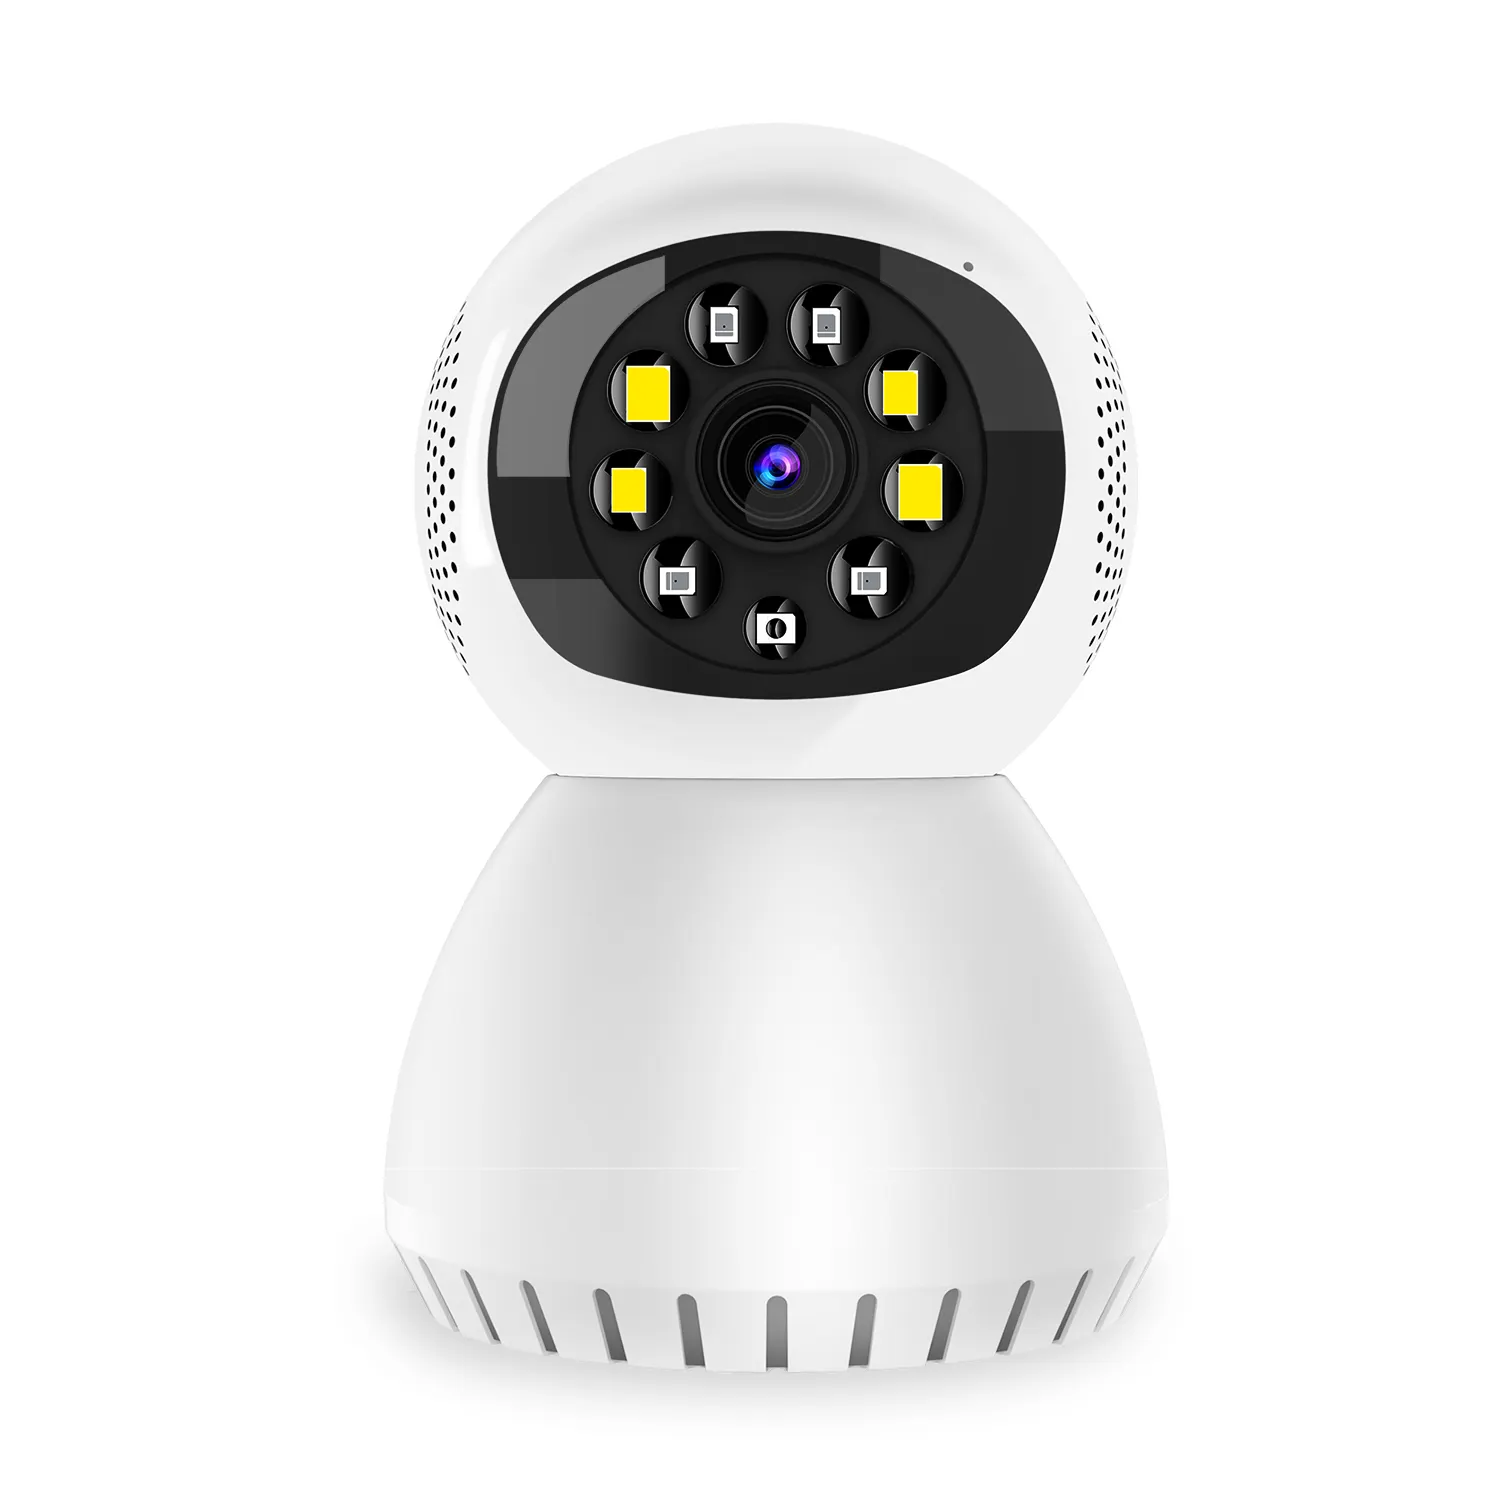 الجملة 1080P SD بطاقة wifi كاميرا روبوت IP CCTV للرؤية الليلية اتجاهين الصوت مراقبة الطفل الأمن كاميرا تلفزيونات الدوائر المغلقة الذكية جهاز منزلي